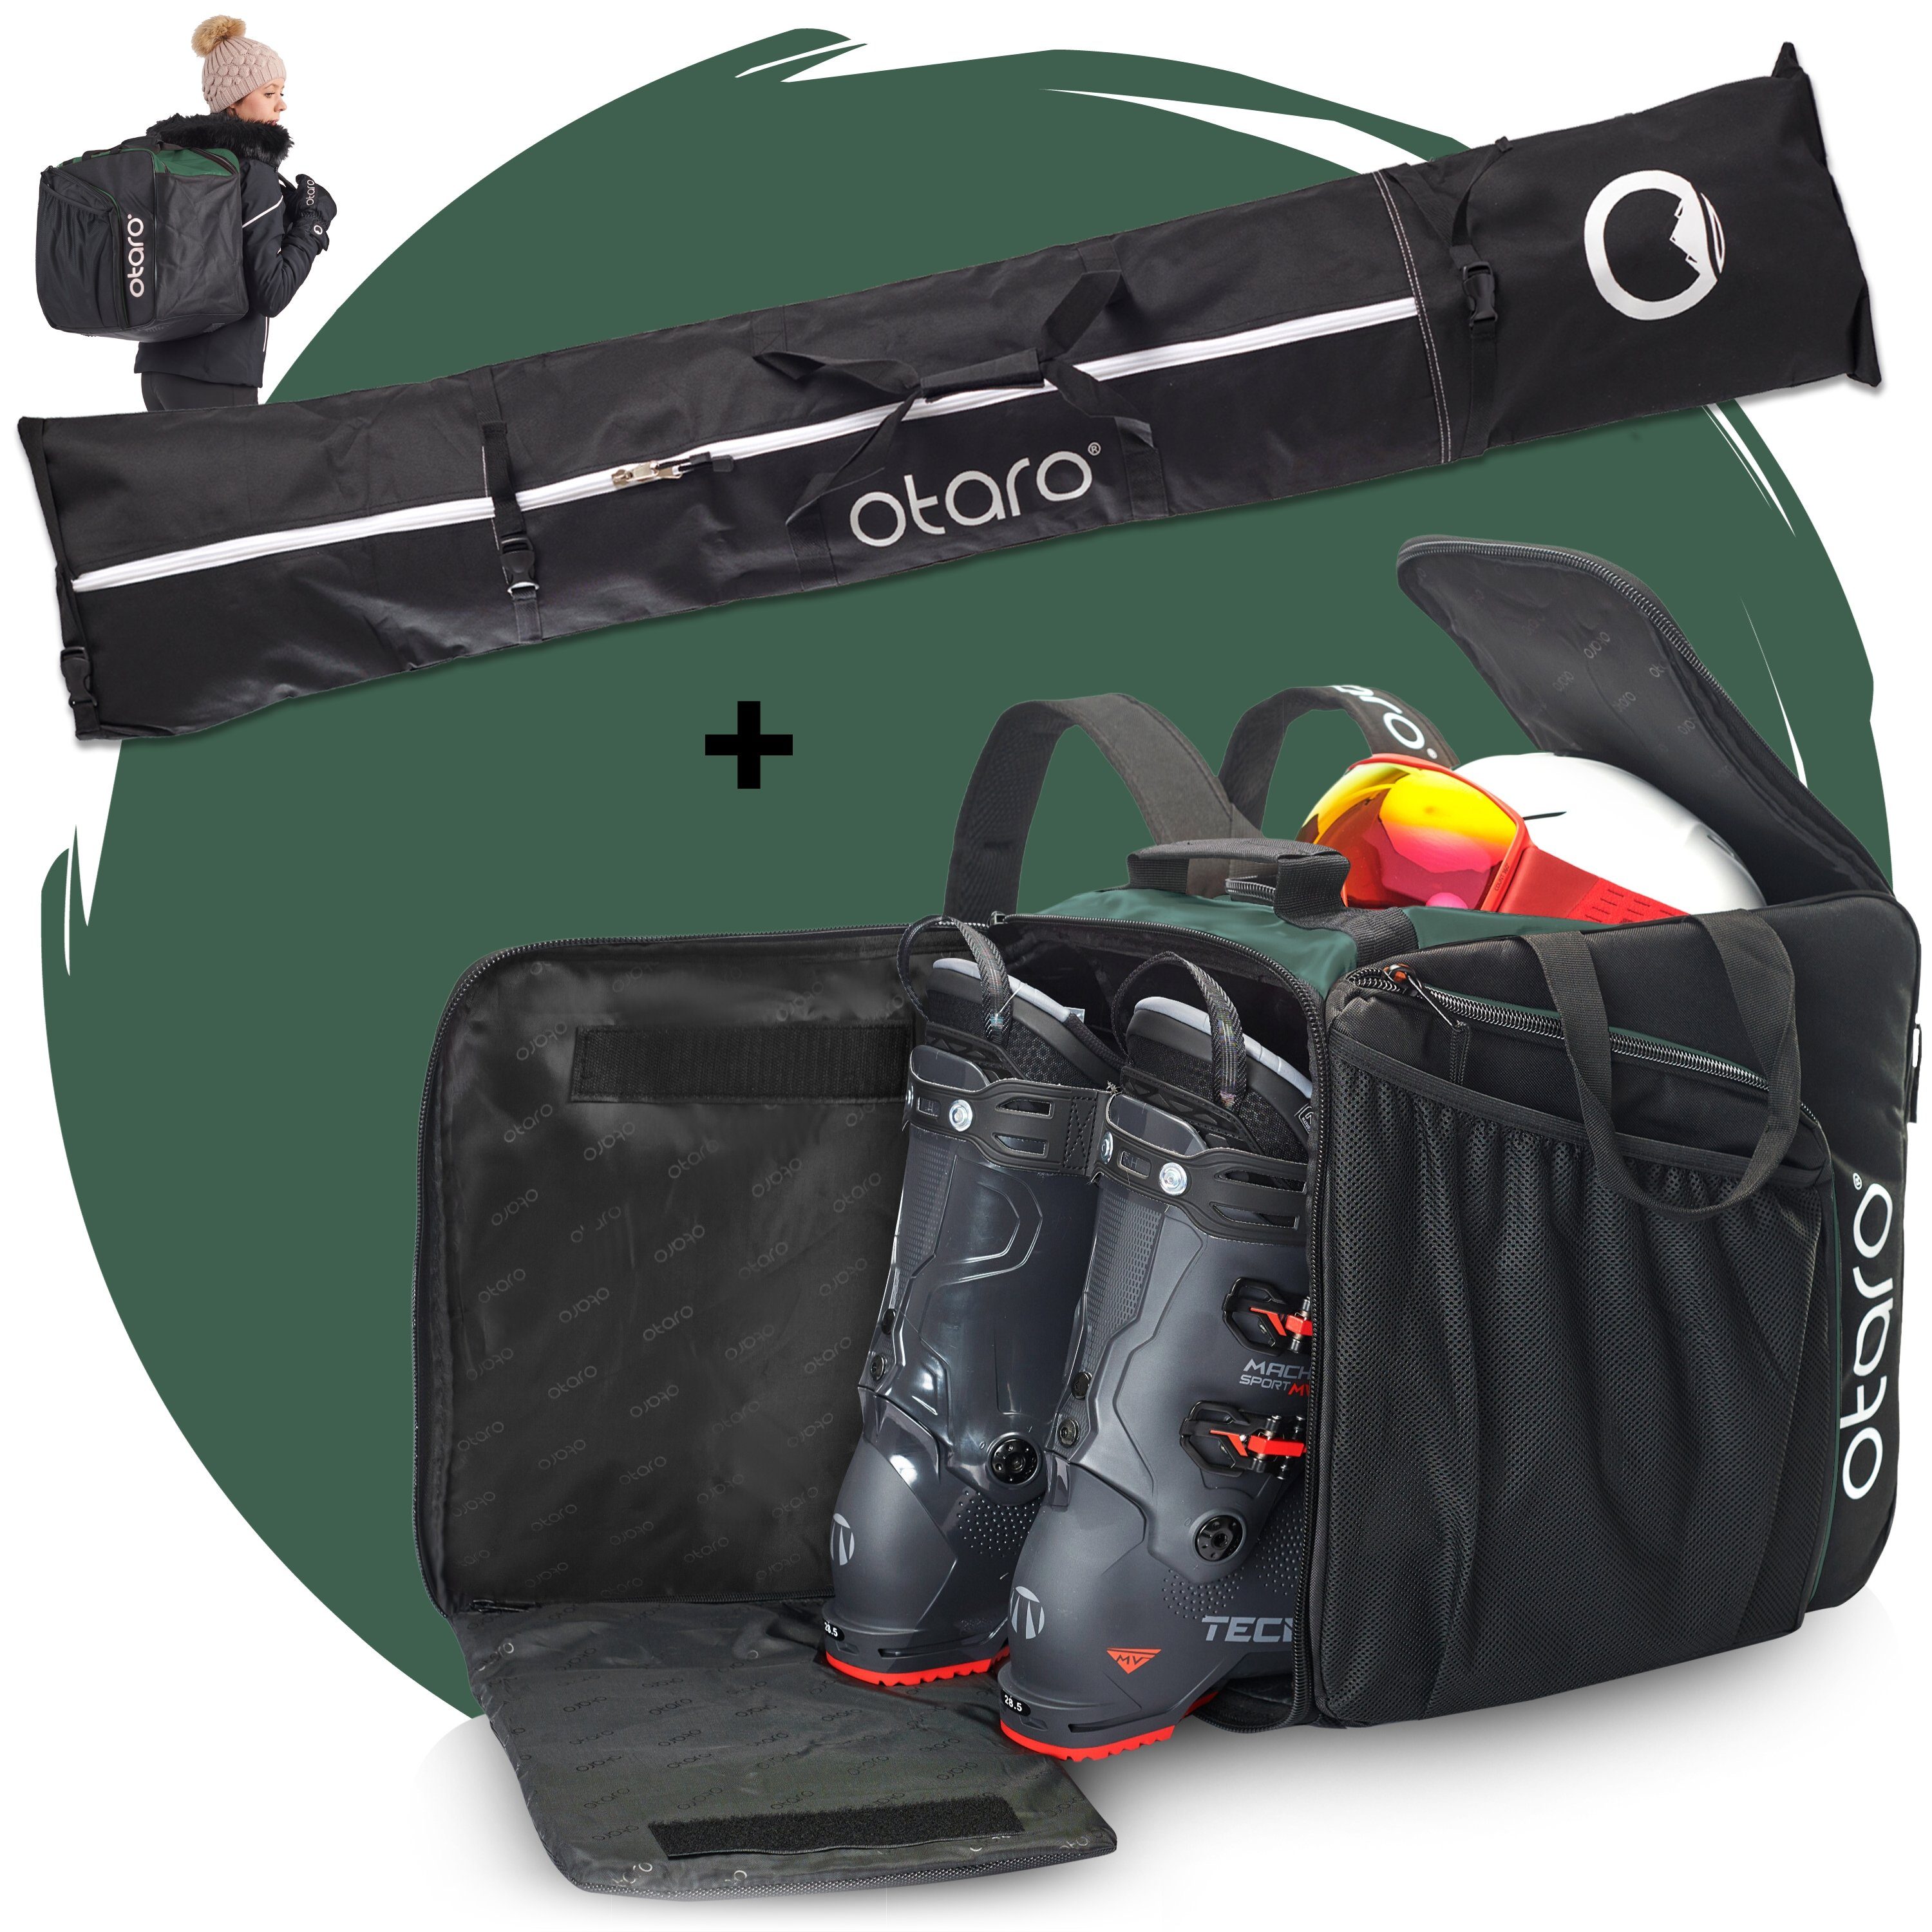 Skitasche, Ausrüstung, Tannengrün Standfläche, Otaro ausklappbare Schuhfach für Stöcke) Perfekt + Set: Ski Schwarz durchdacht, (Schutz Pro-Set Skitasche 2 & für deine Skischuhtasche 2 für Paar Paar Ski mit